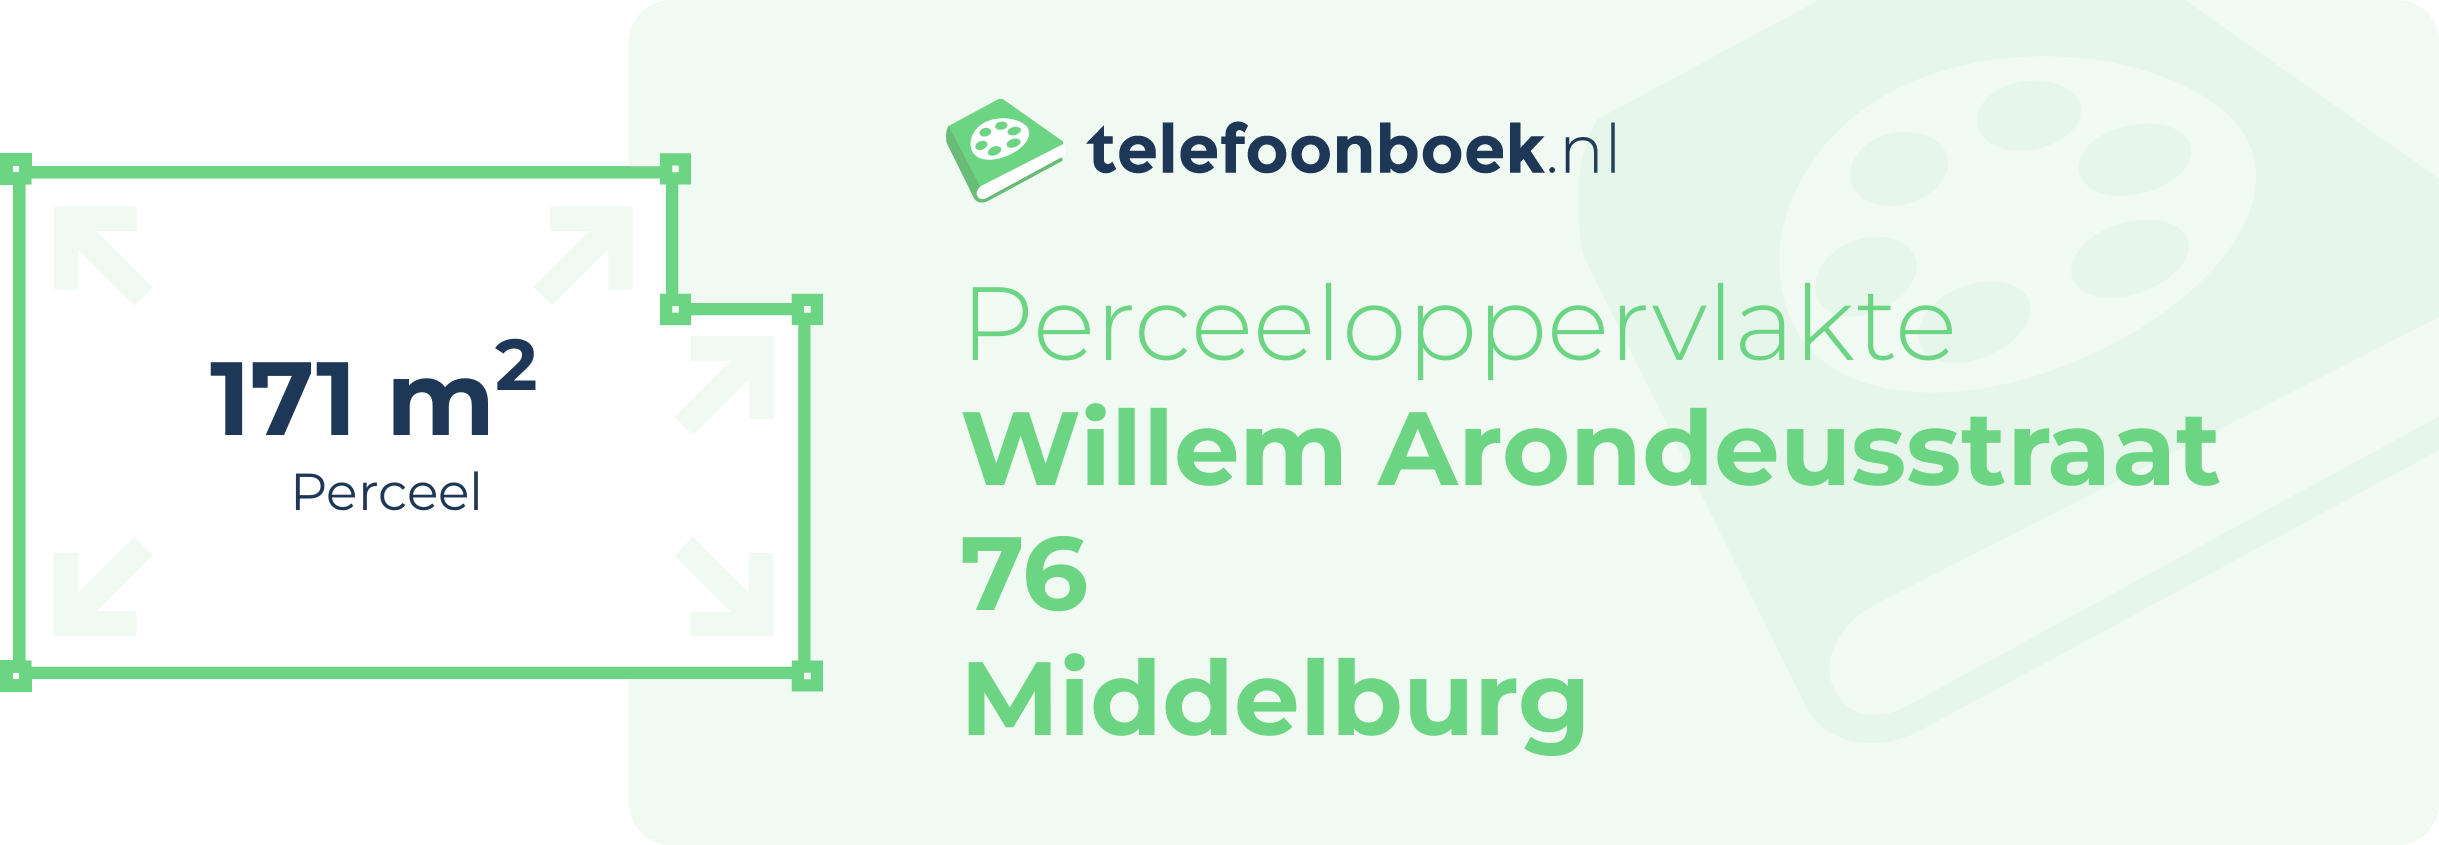 Perceeloppervlakte Willem Arondeusstraat 76 Middelburg